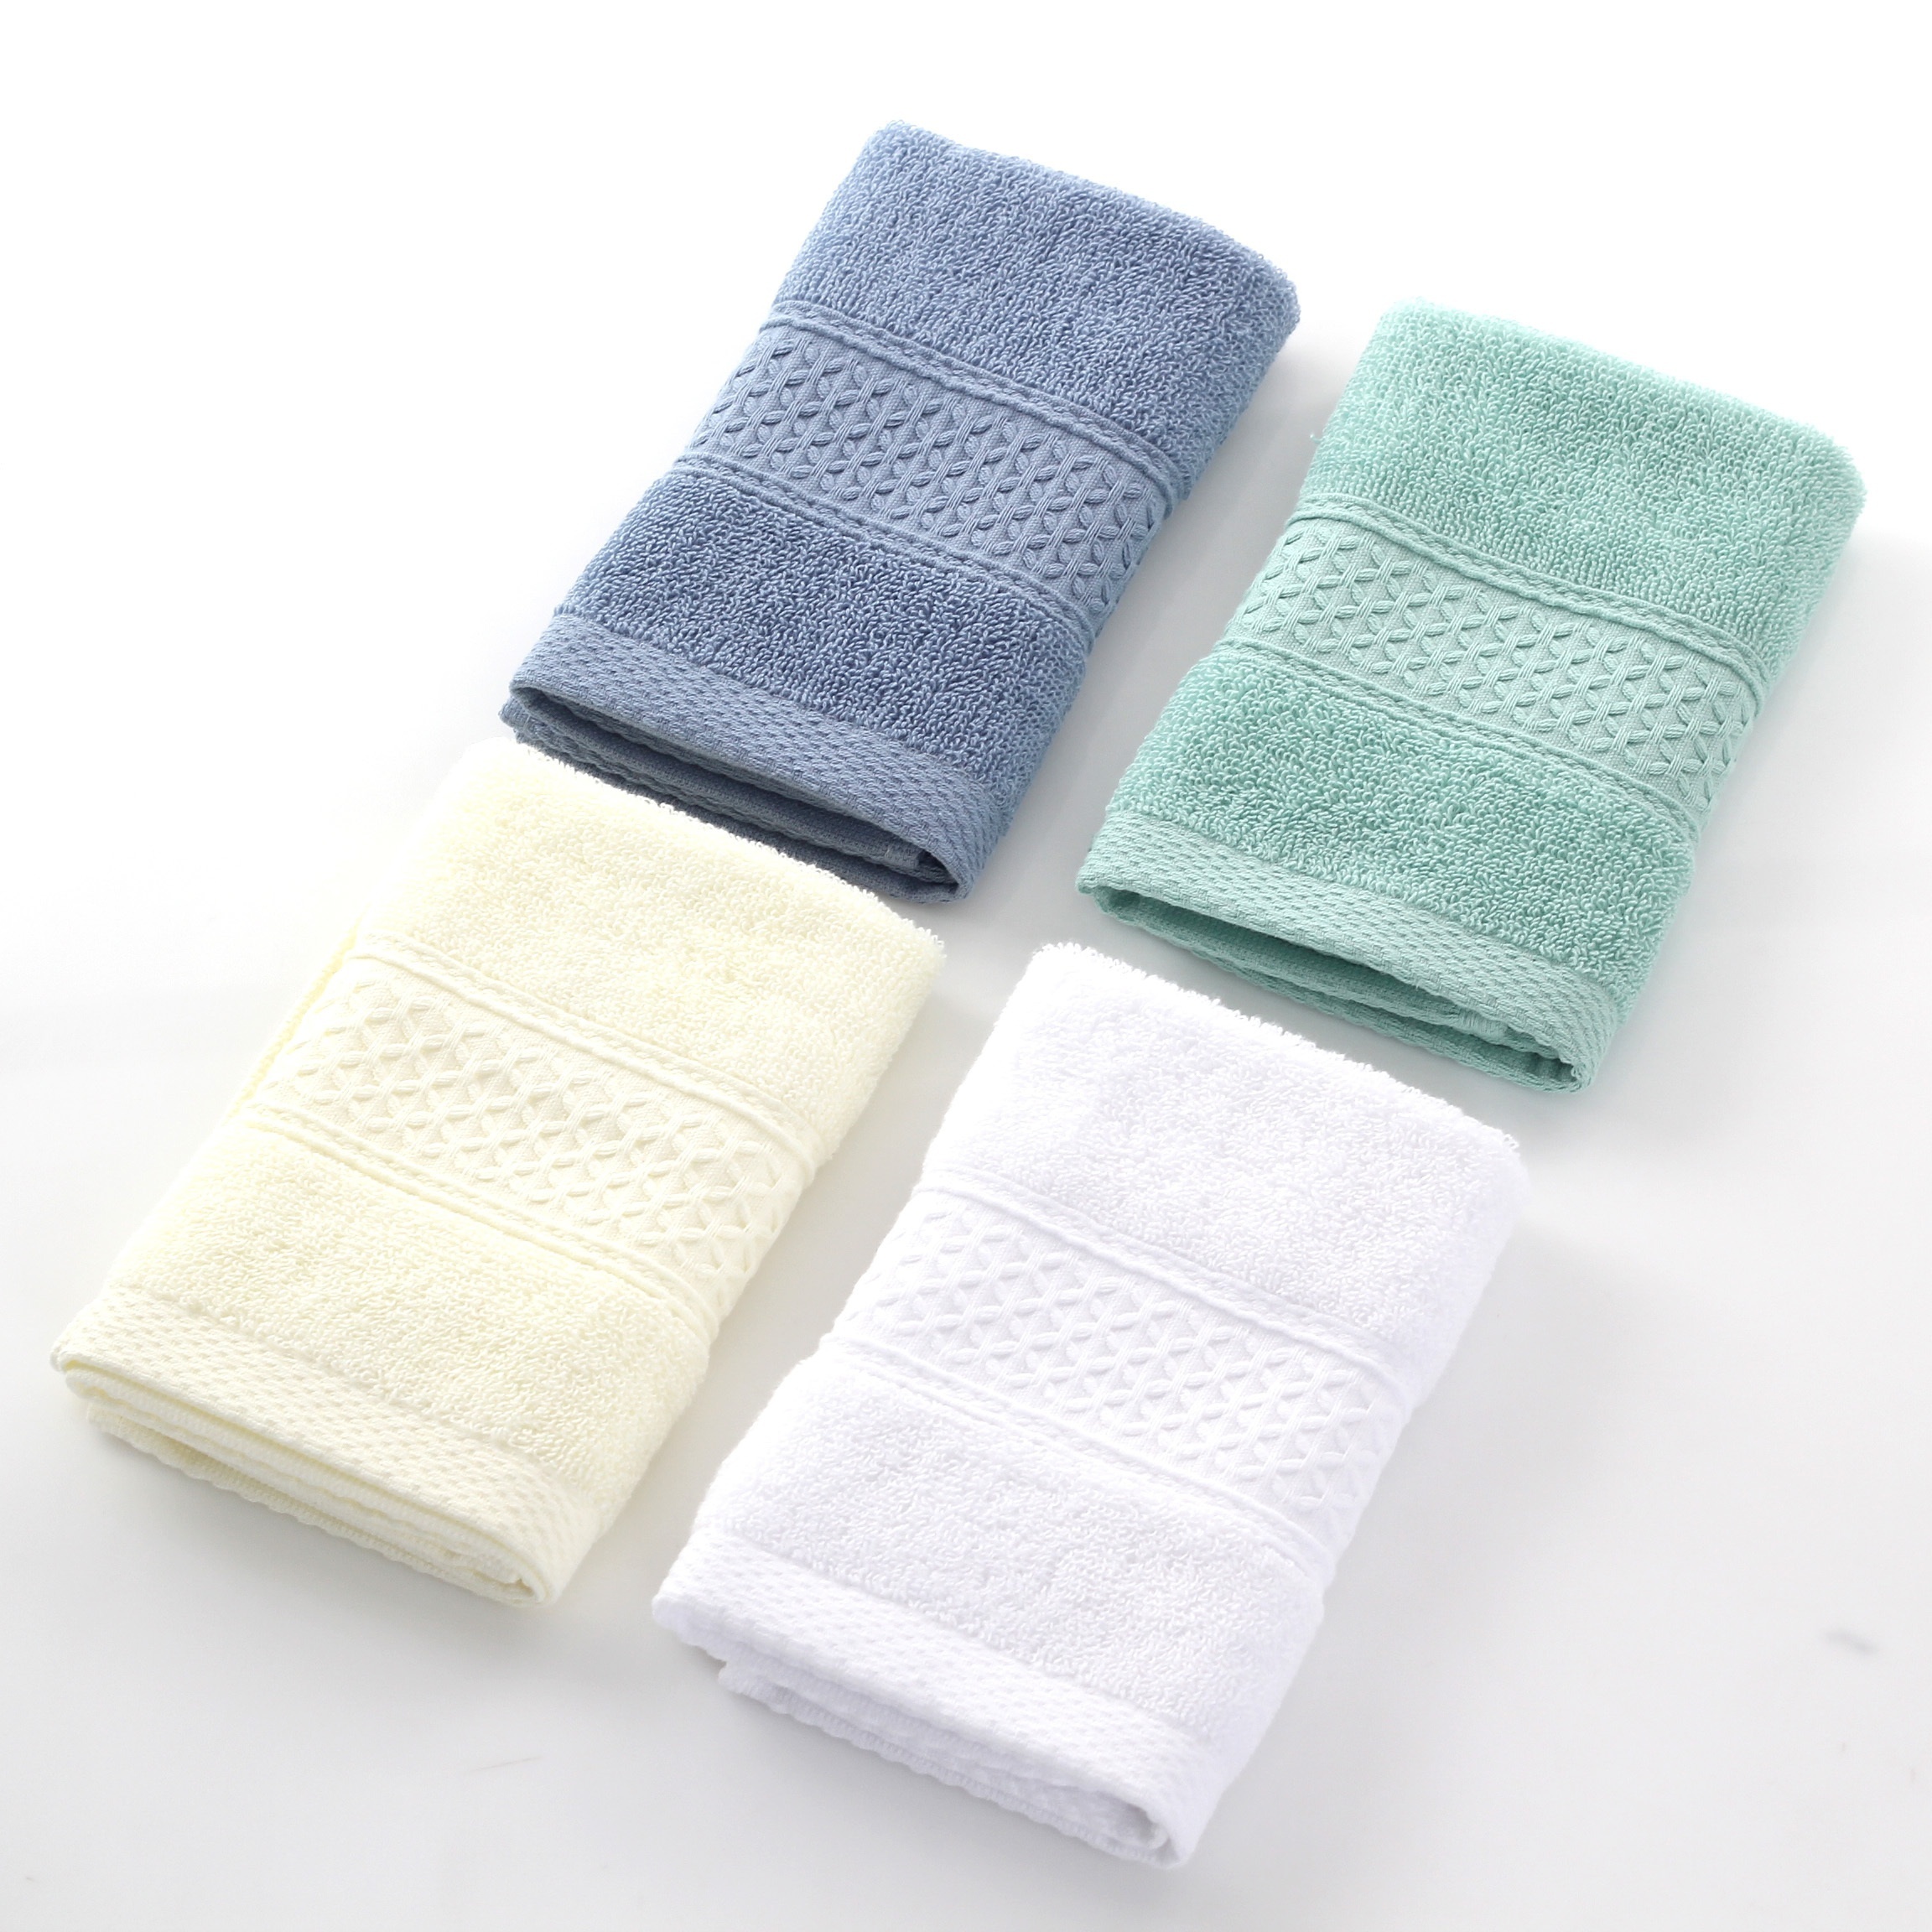 Comprar Juego de toallas de algodón de lujo de color silid de 3